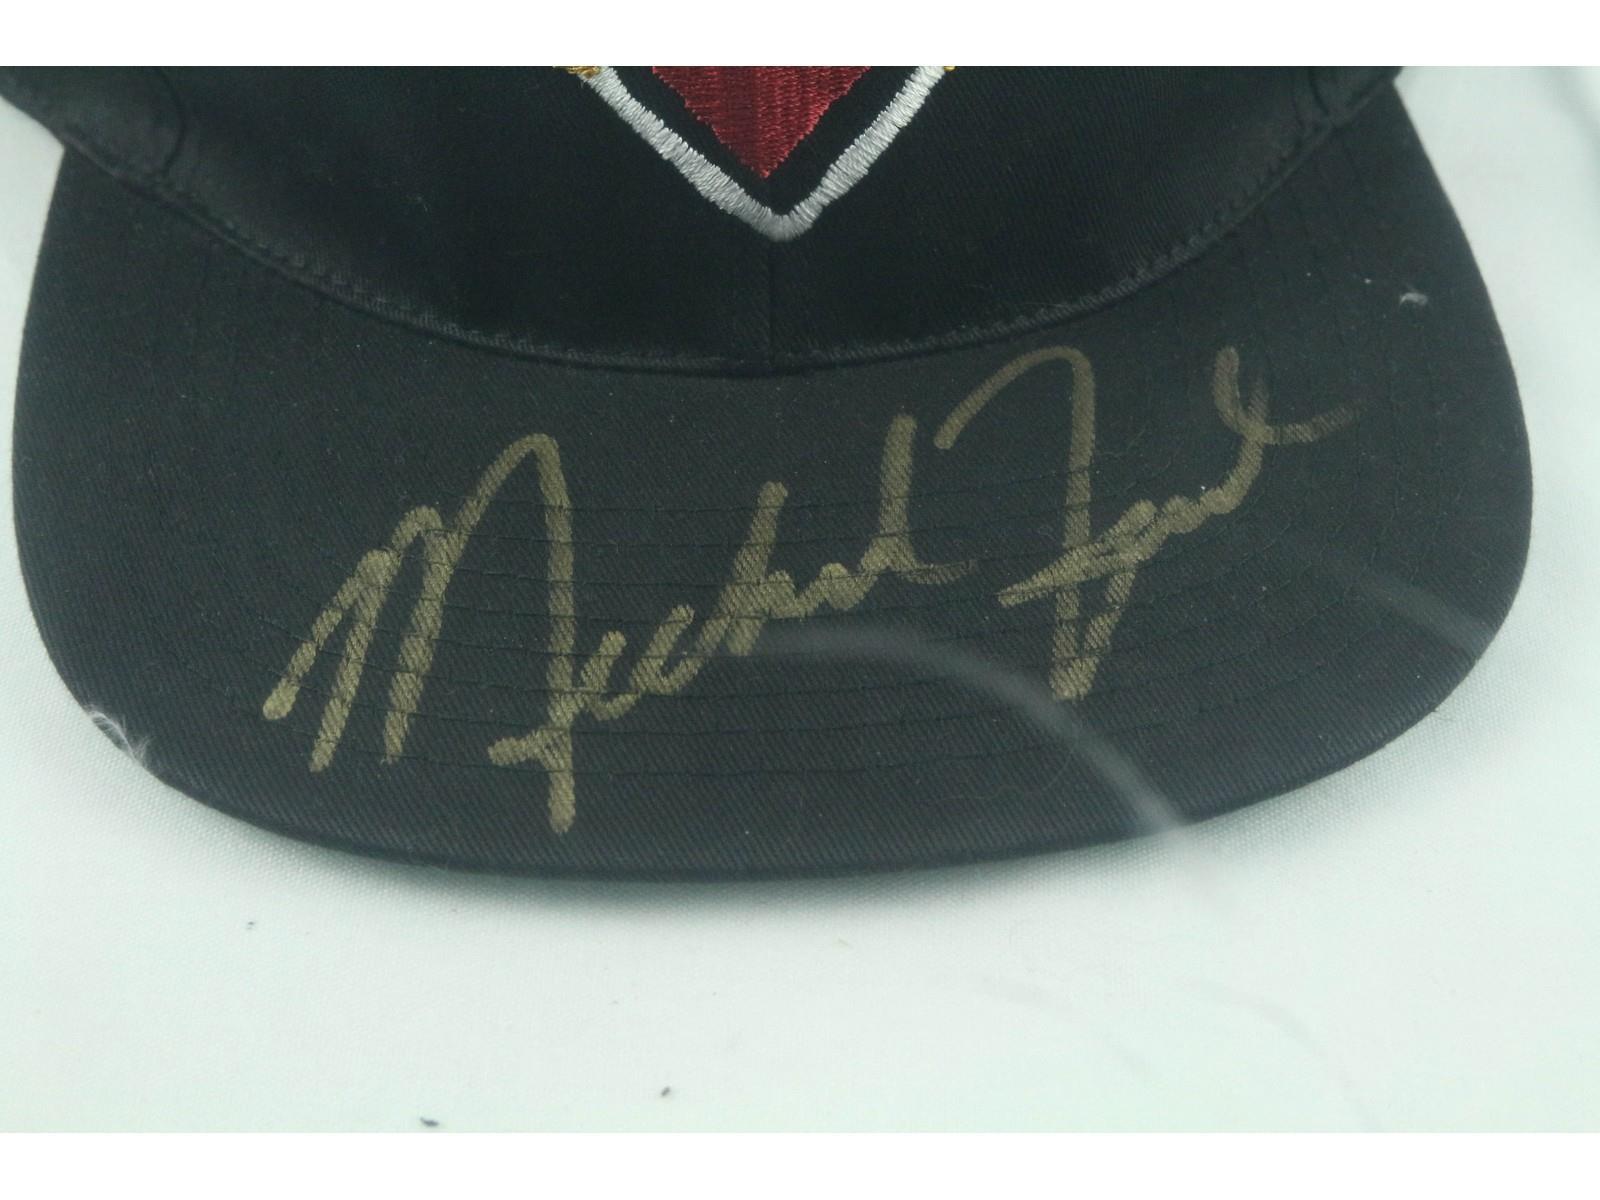 Michael Jordan Signed Baseball Cap